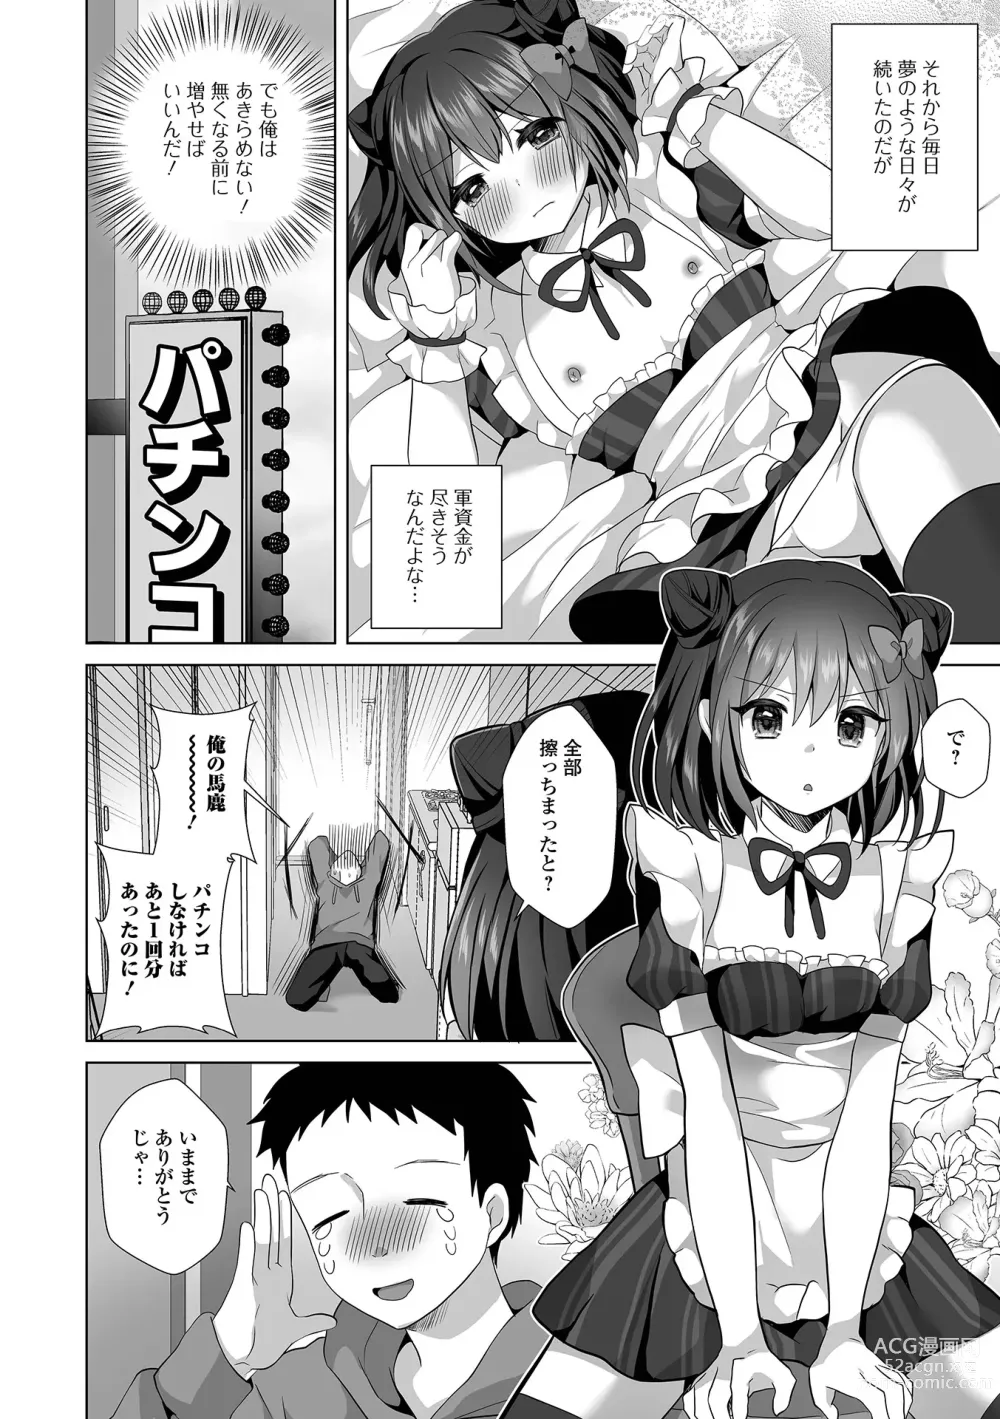 Page 8 of manga Gekkan Web Otoko no Ko-llection! S Vol. 93